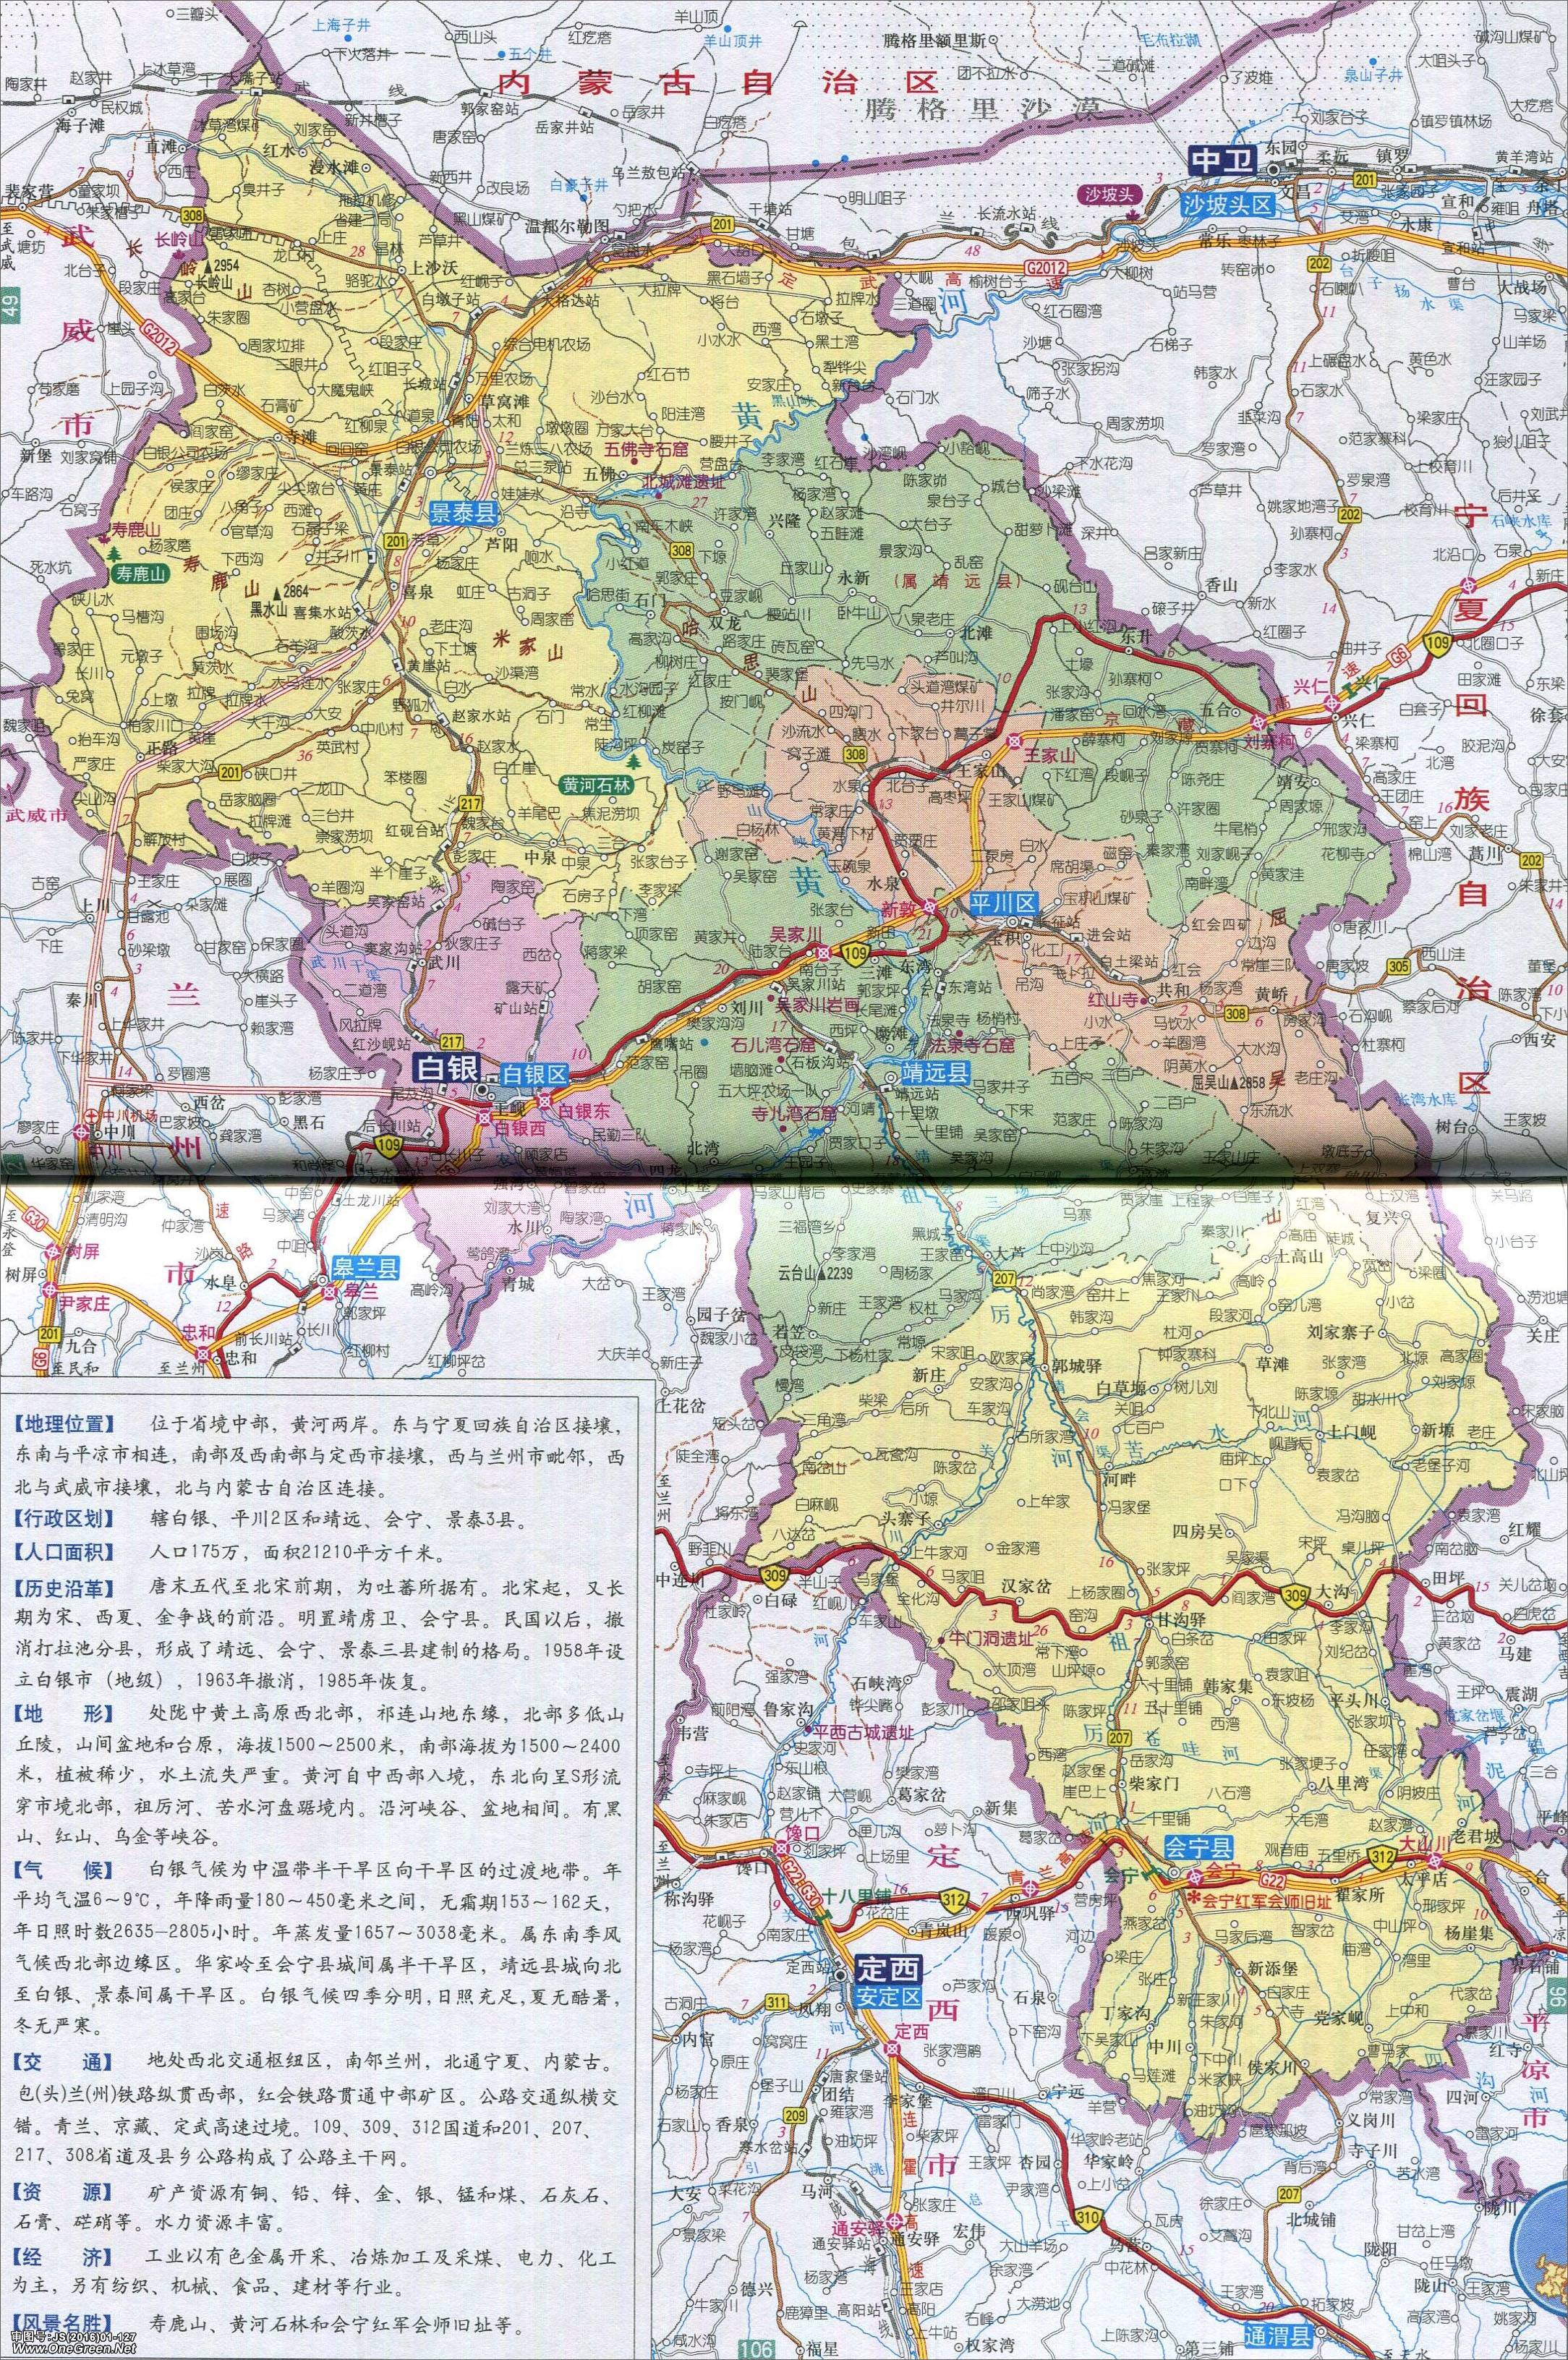 甘南 上一张地图: 没有了  | 白银 |  下一张地图: 平川区_靖远县地图图片